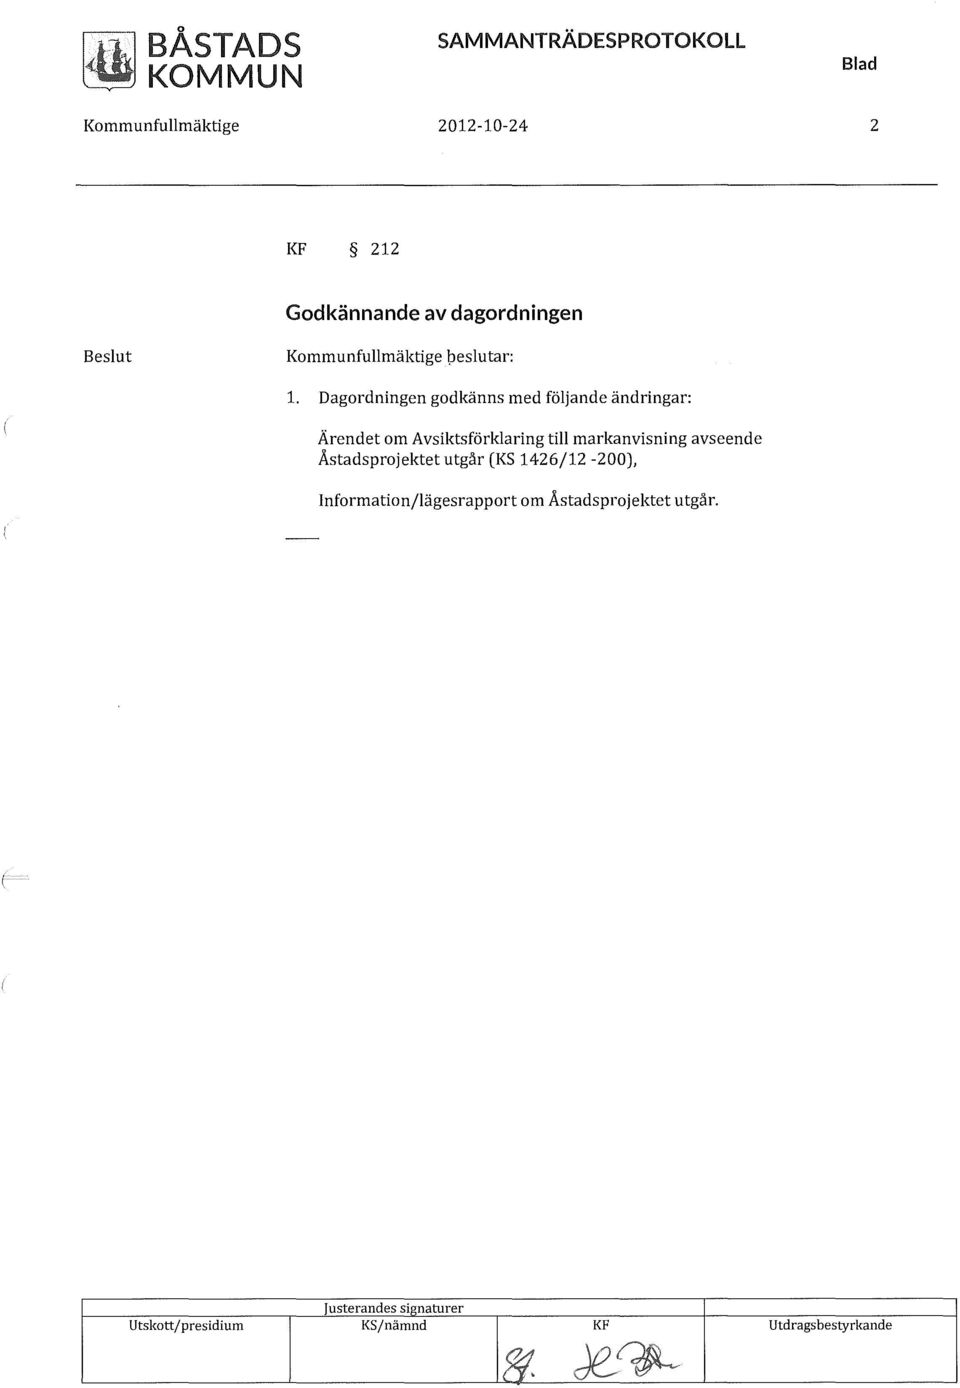 Dagordningen godkänns med följande ändringar: Ärendet om Avsiktsförklaring till markanvisning avseende